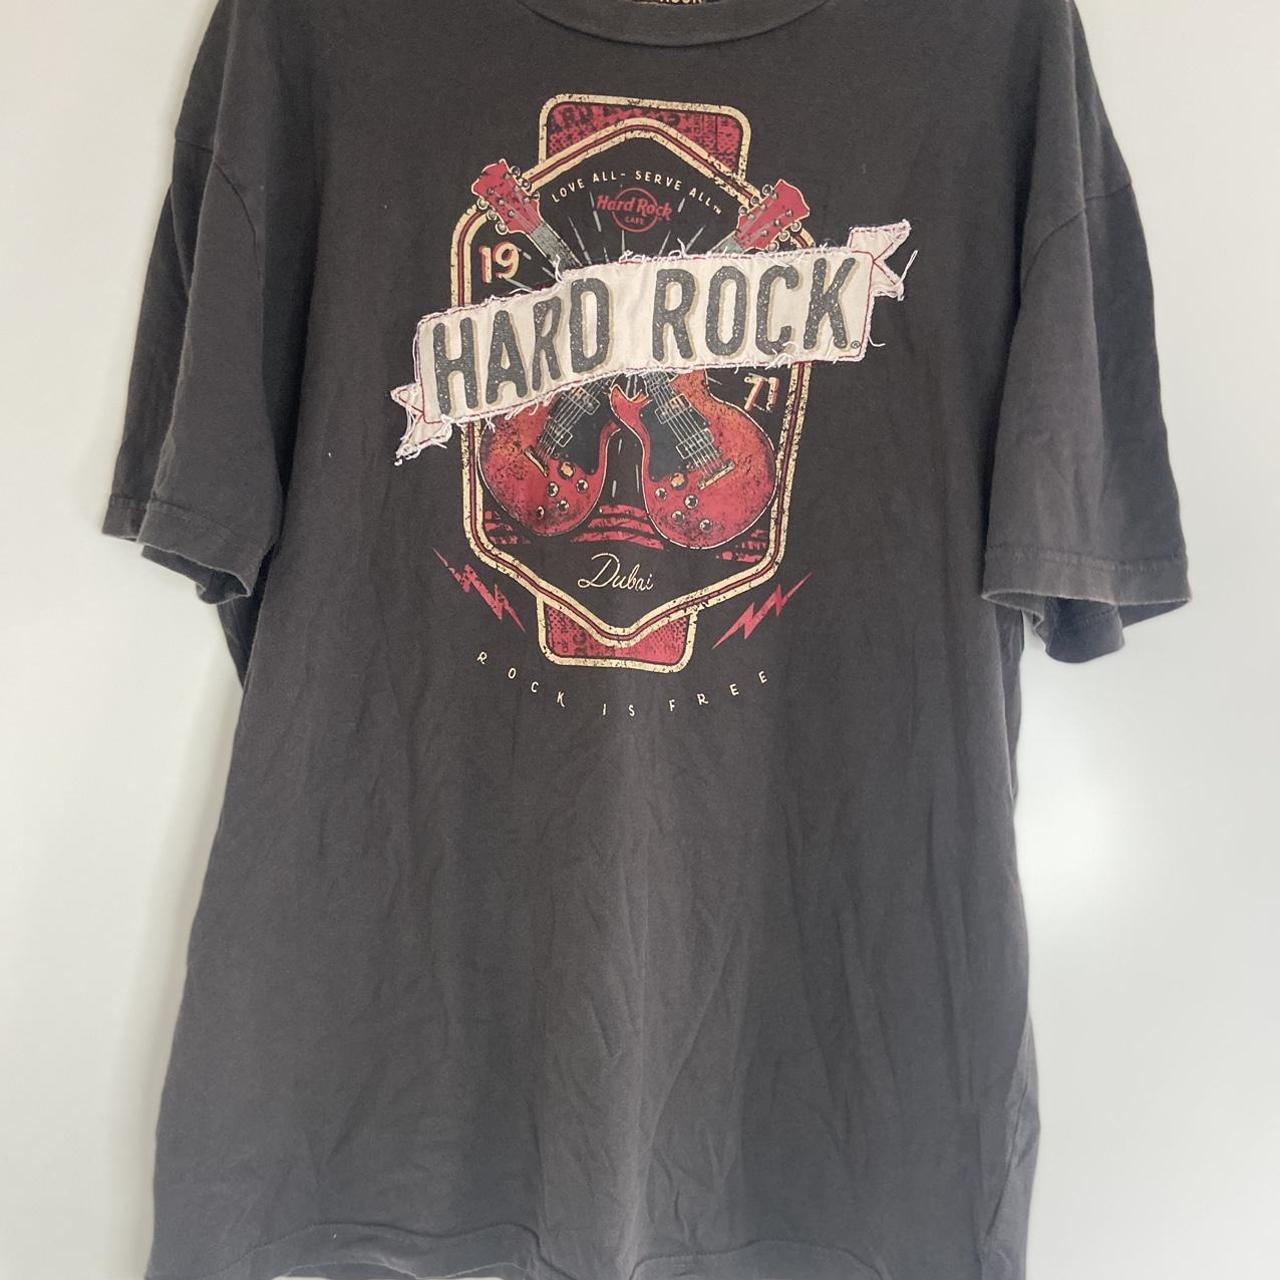 Hard Rock Cafe Dubai T-shirt 💎 About the item... - Depop